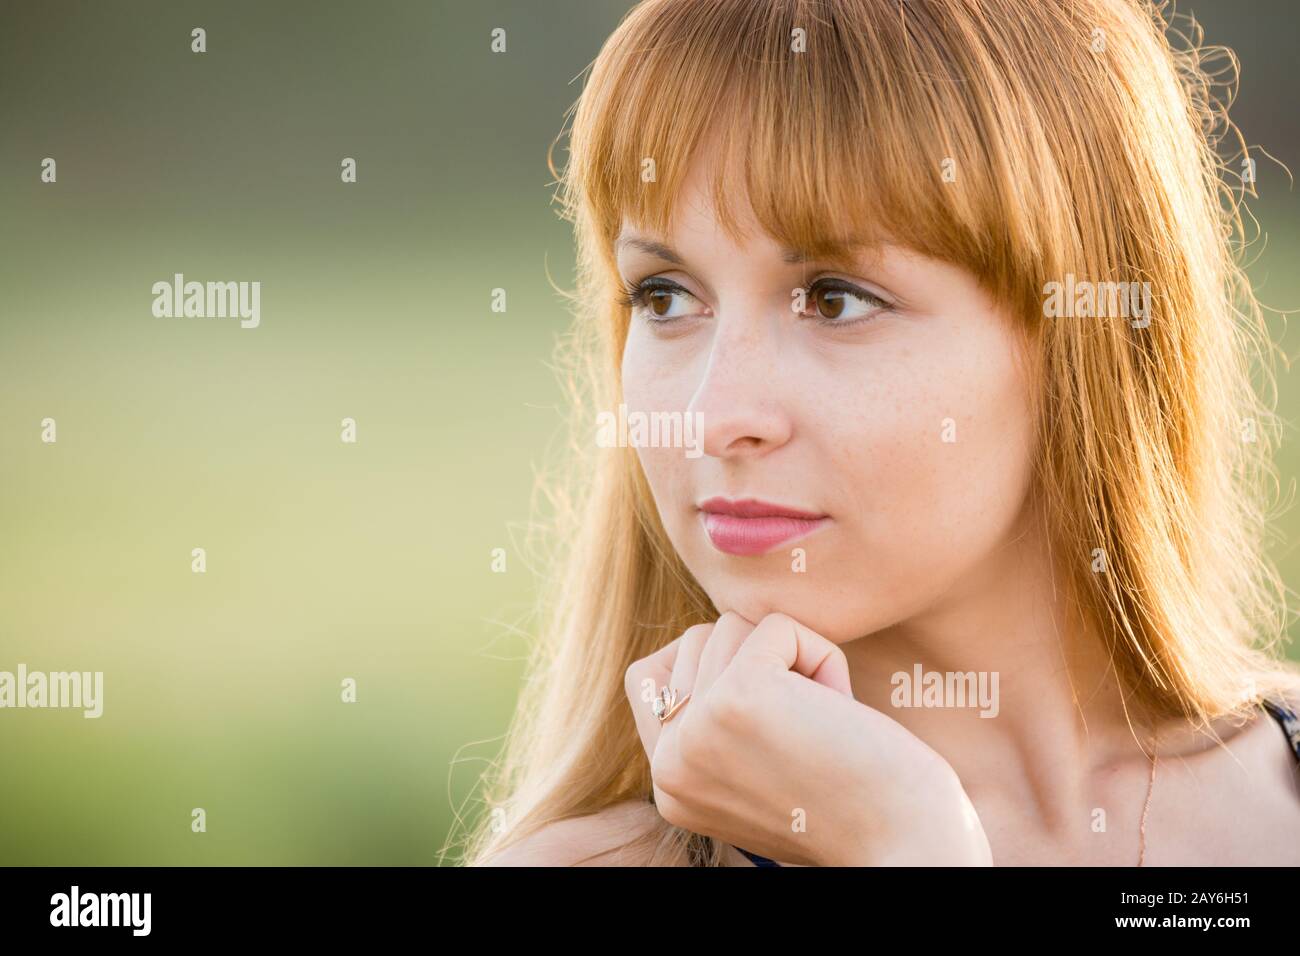 Porträt eines Mädchens Blick auf der linken Seite erstellen einen weichen grünen Hintergrund Stockfoto